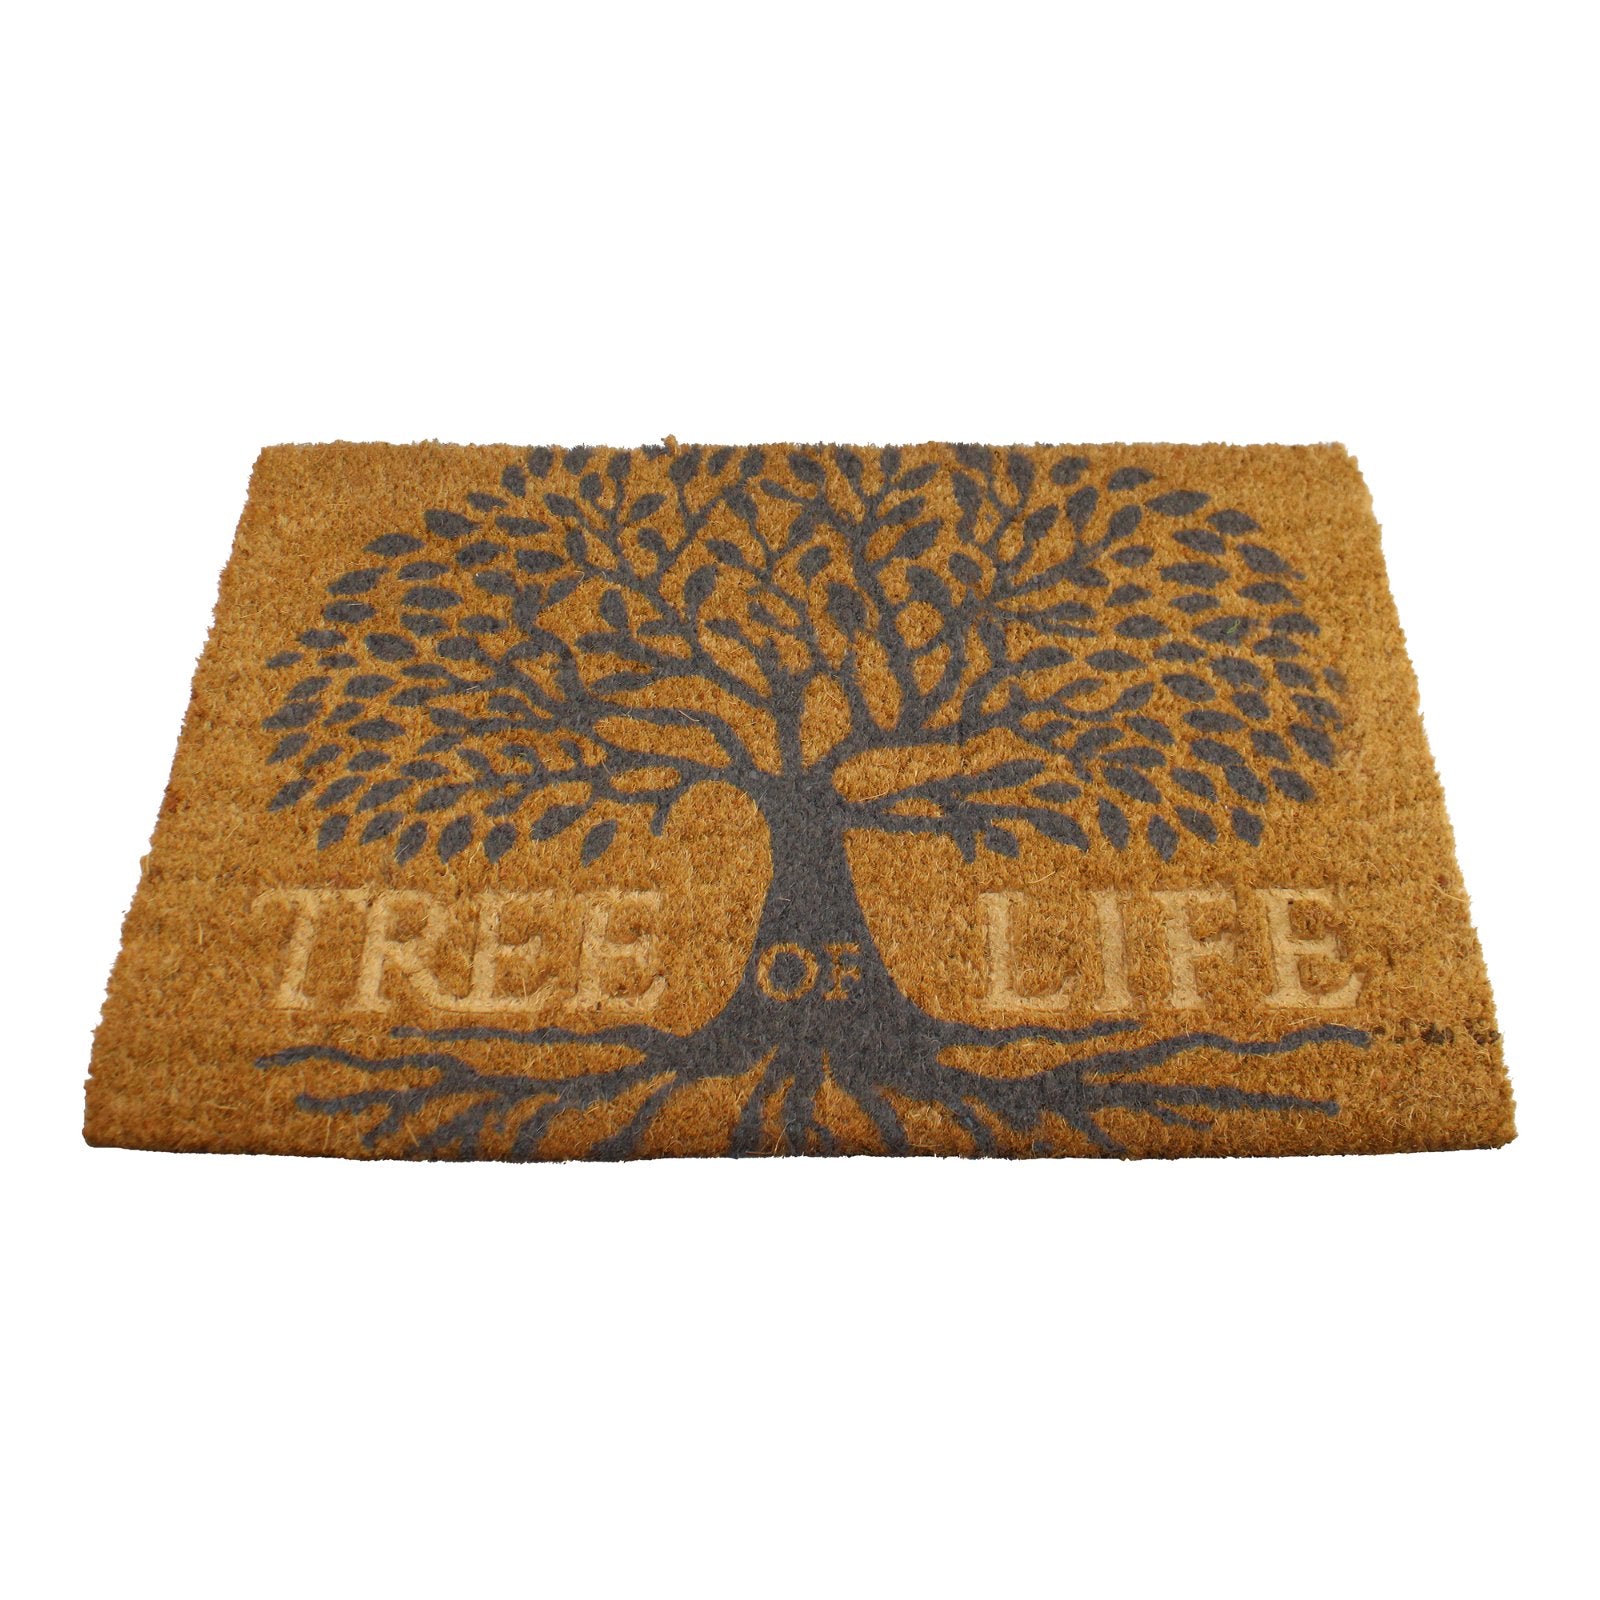 Tree Of Life Design Coir Doormat, 60x40cm - Kaftan direct